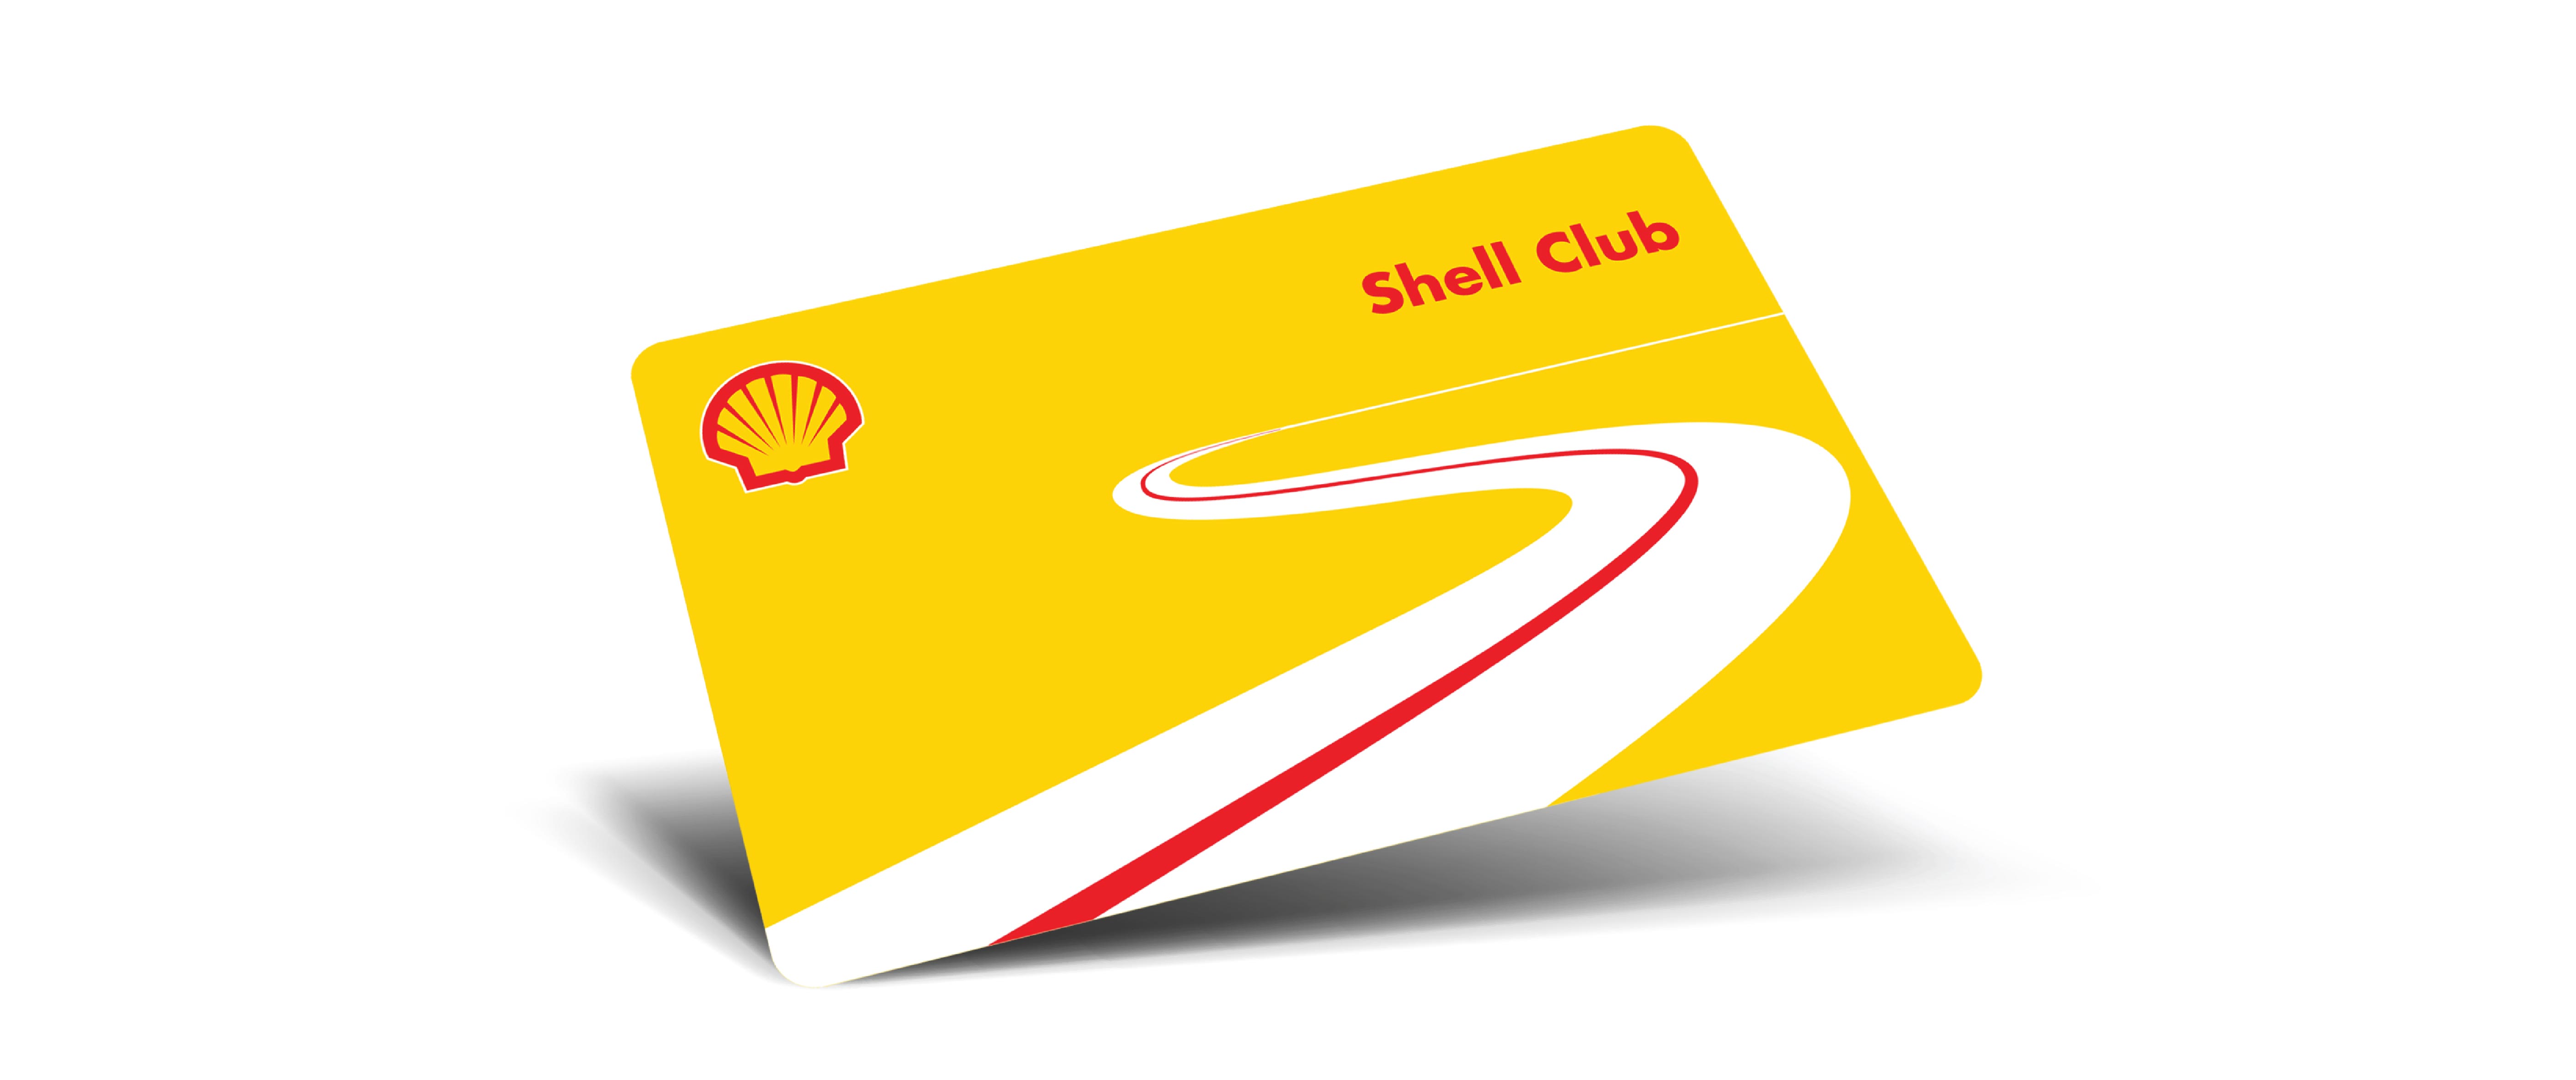 Shell club